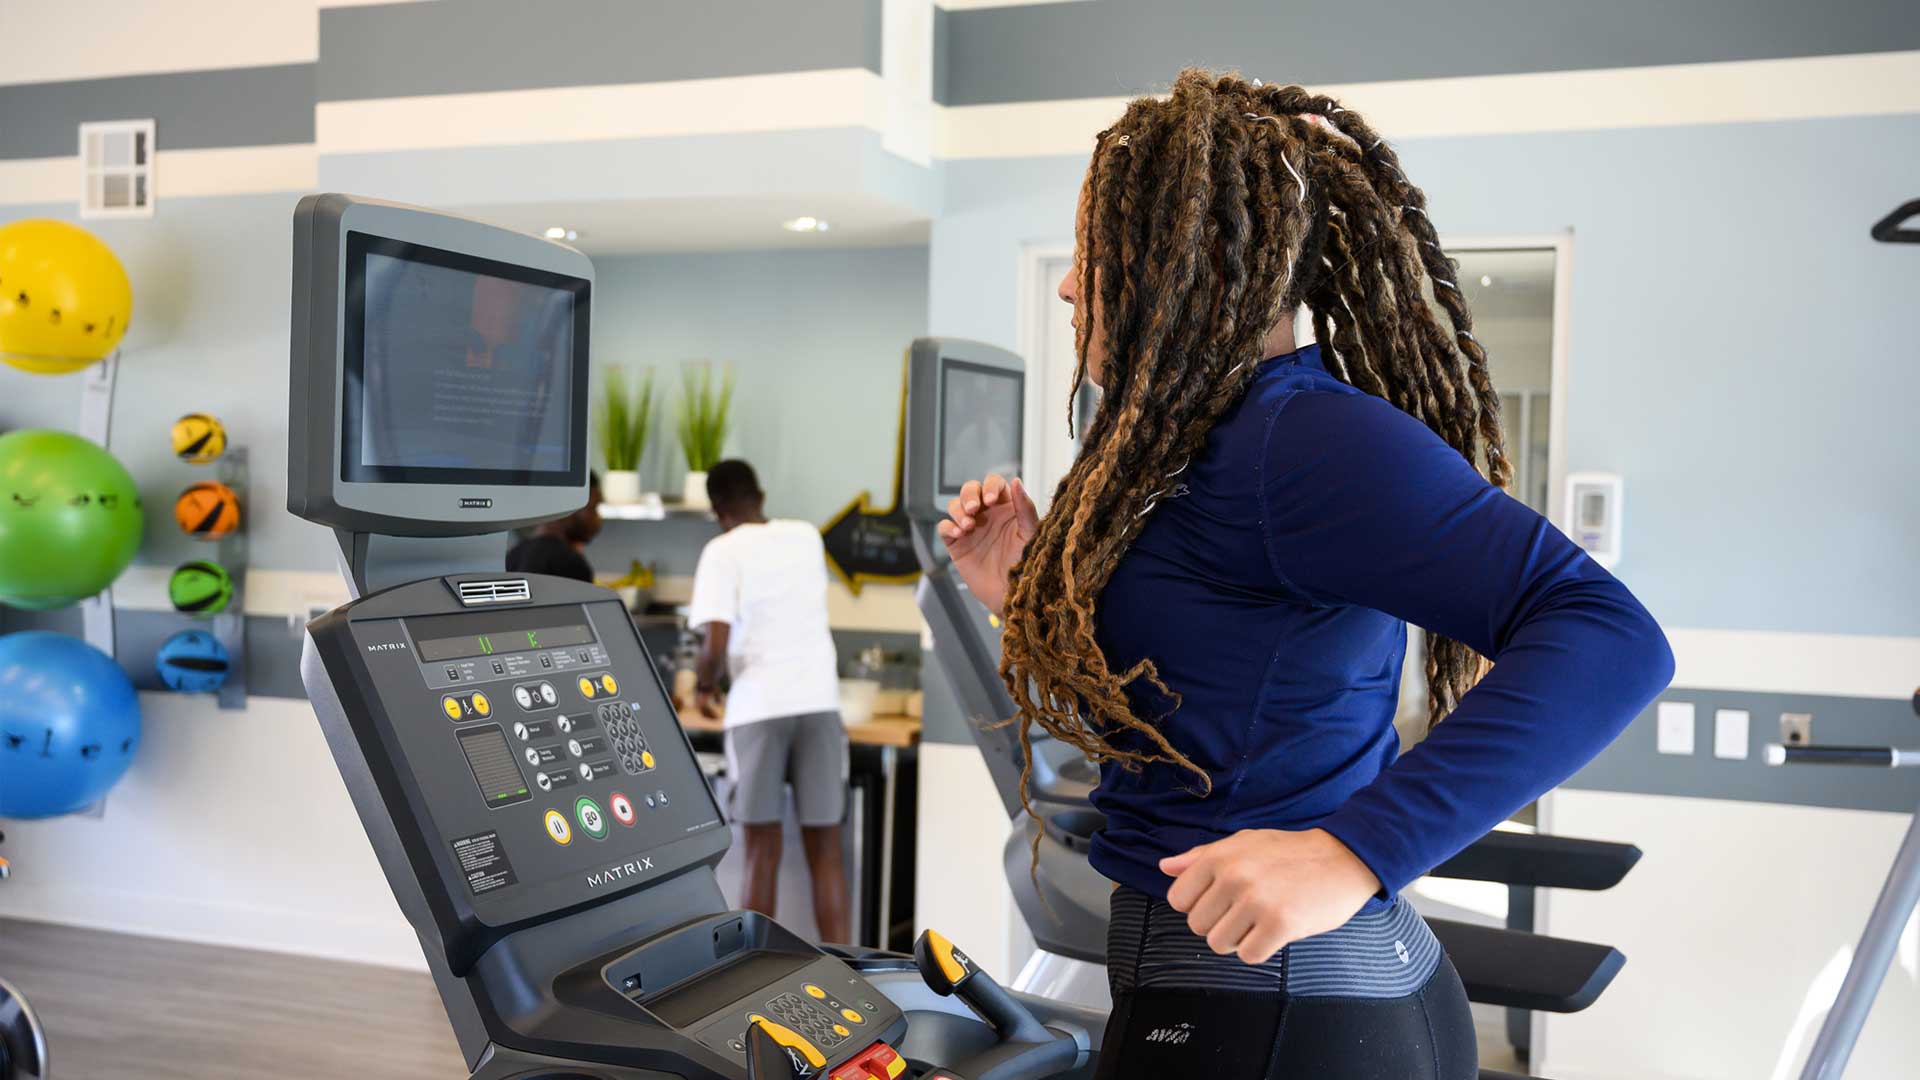 running_on_treadmill_in_fitness_center-2